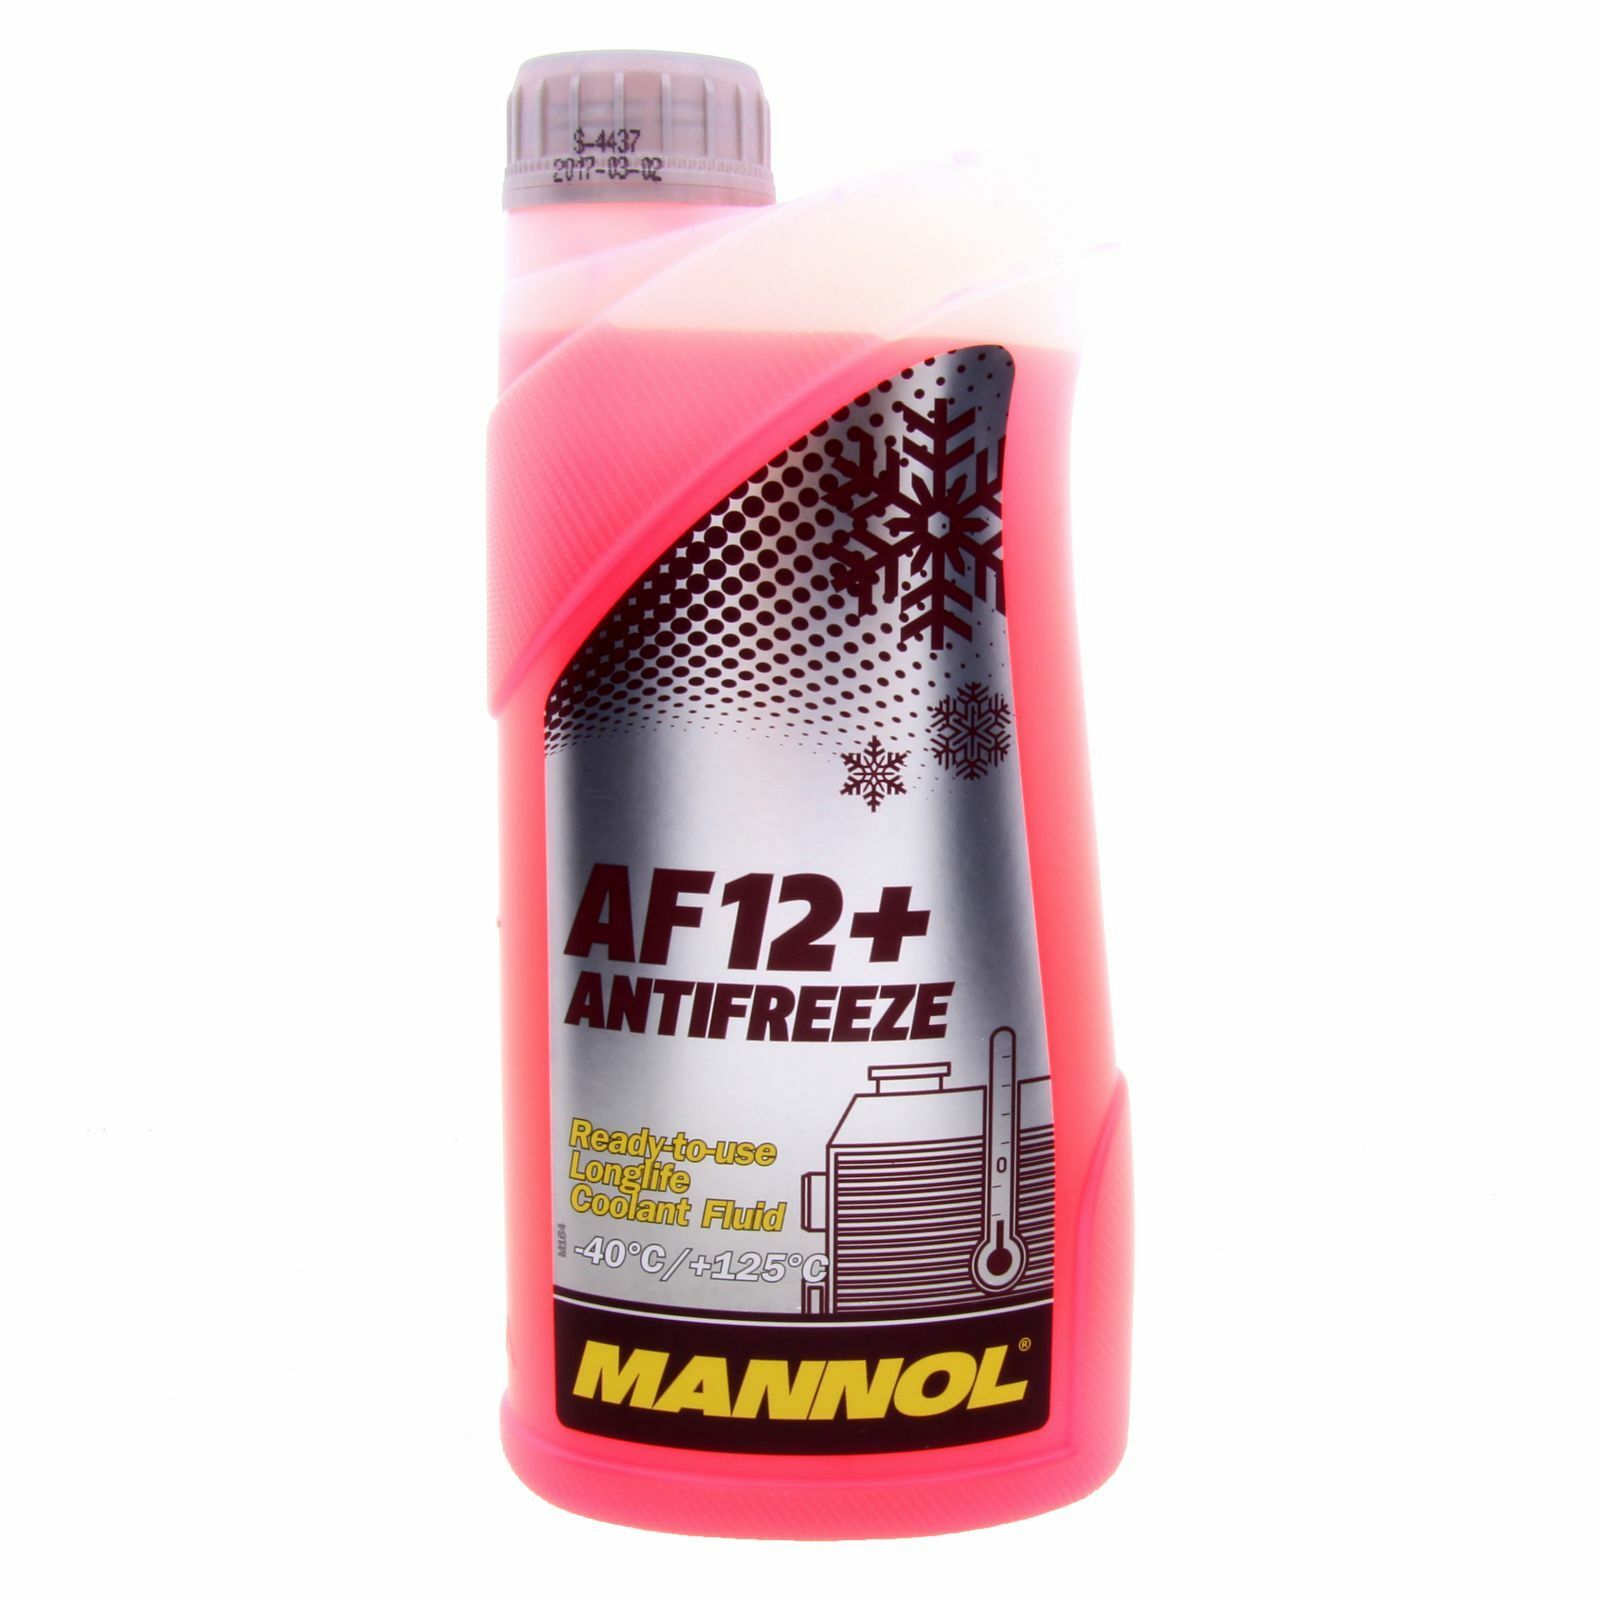 1 Liter MANNOL Antifreeze AF12+ Kühler Frostschutz Fertiggemisch rot -40°C G12+ TL774F